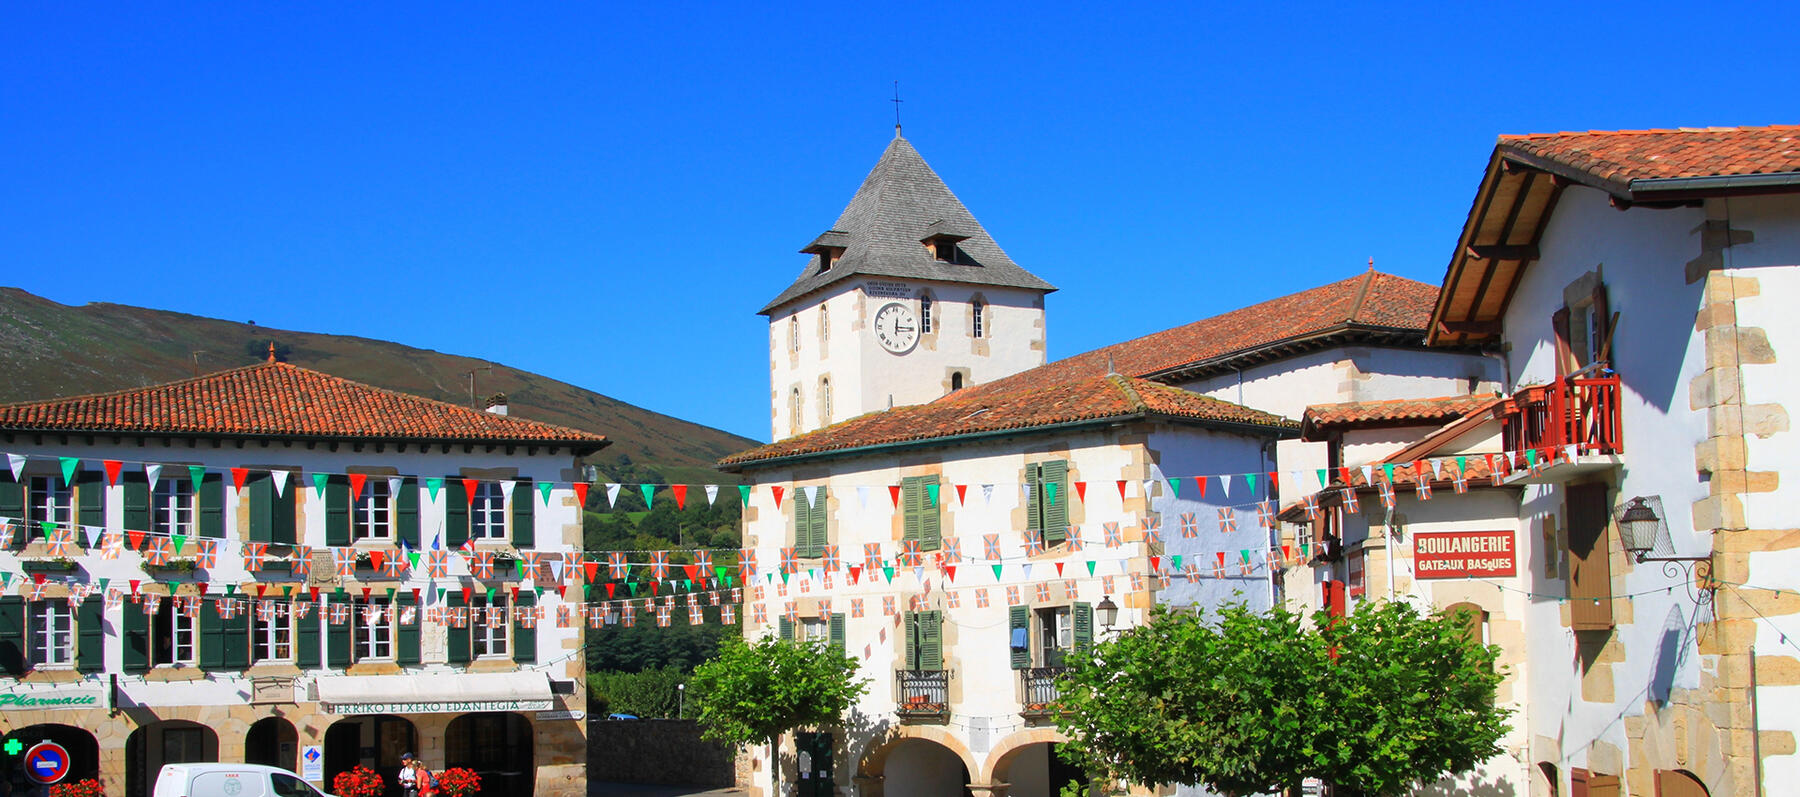 Hôtel Lastiry à Sare, un des plus beaux villages de France